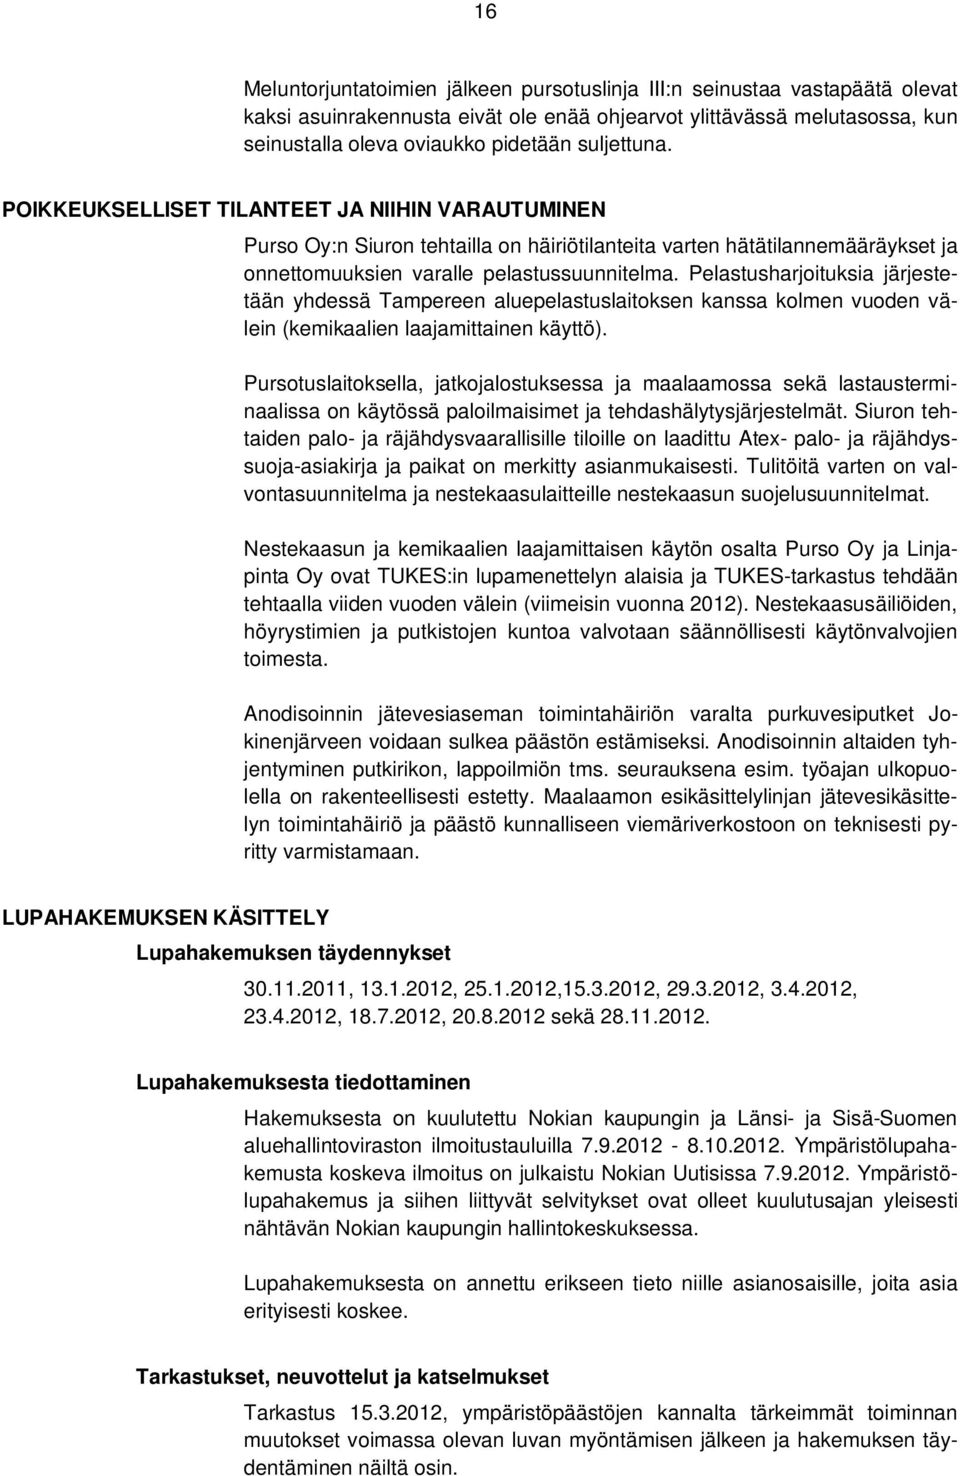 Pelastusharjoituksia järjestetään yhdessä Tampereen aluepelastuslaitoksen kanssa kolmen vuoden välein (kemikaalien laajamittainen käyttö).